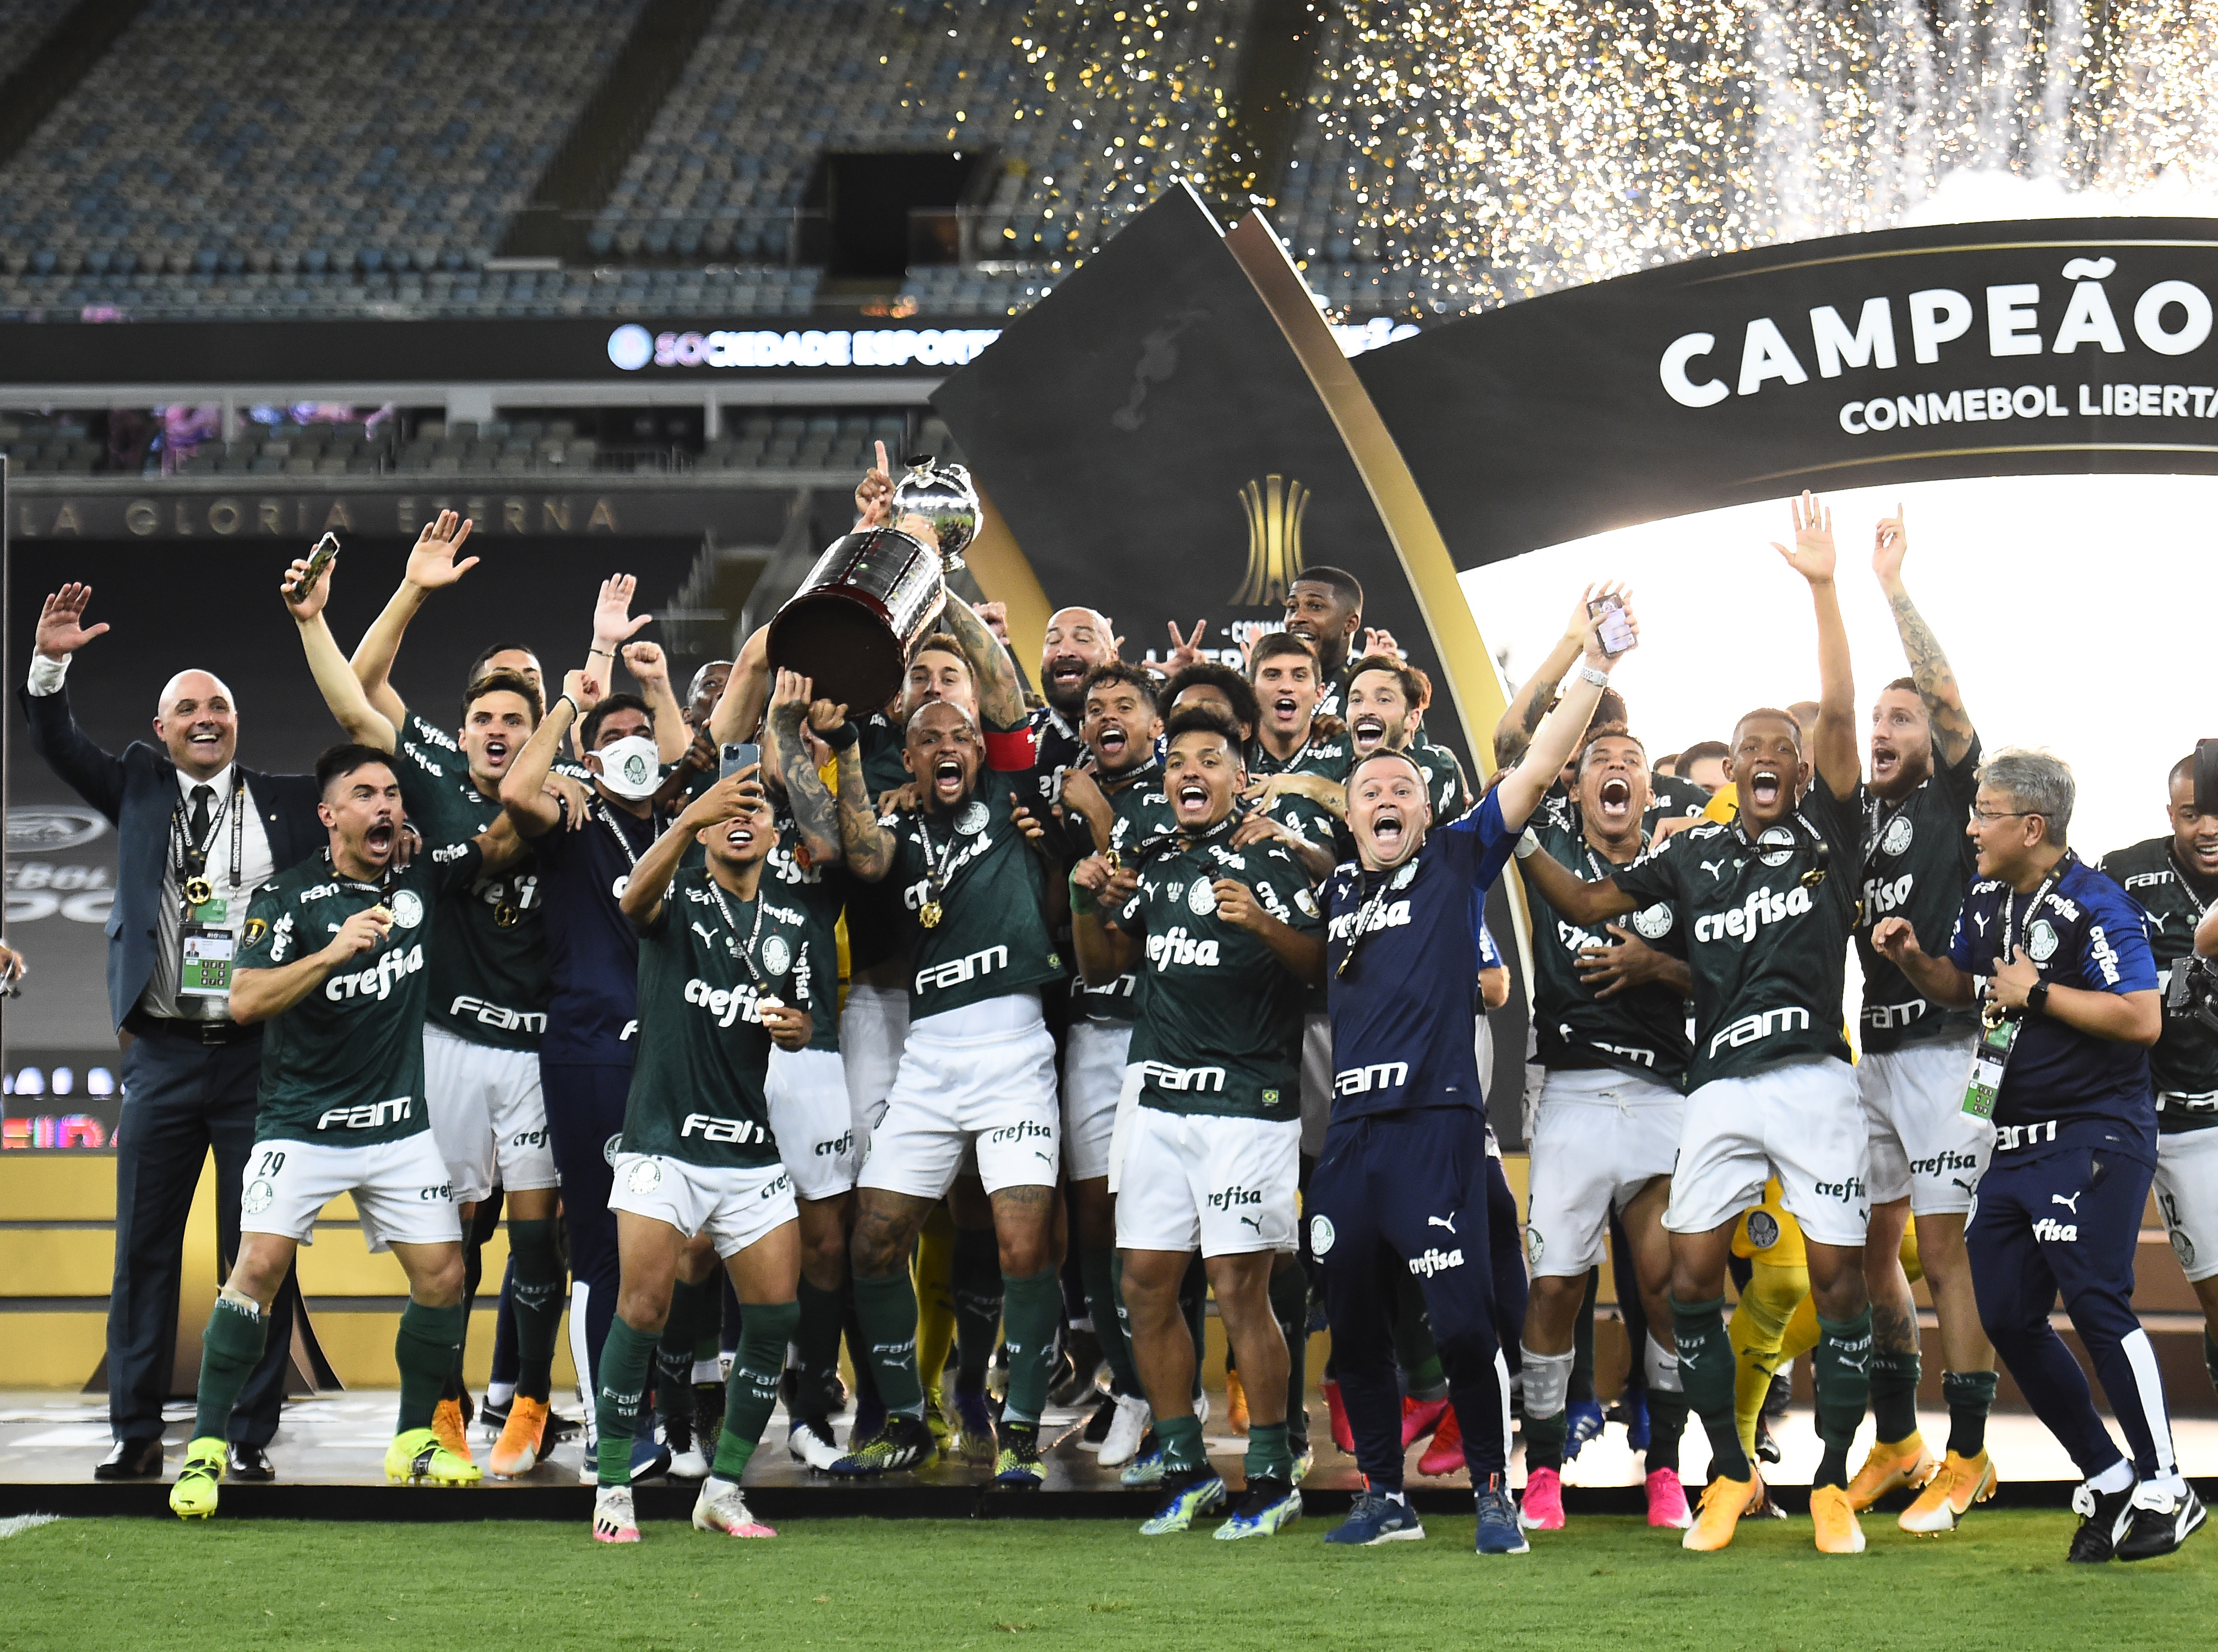 Diário de Transferências Twitter પર: Todos os vencedores da #Libertadores.   / X